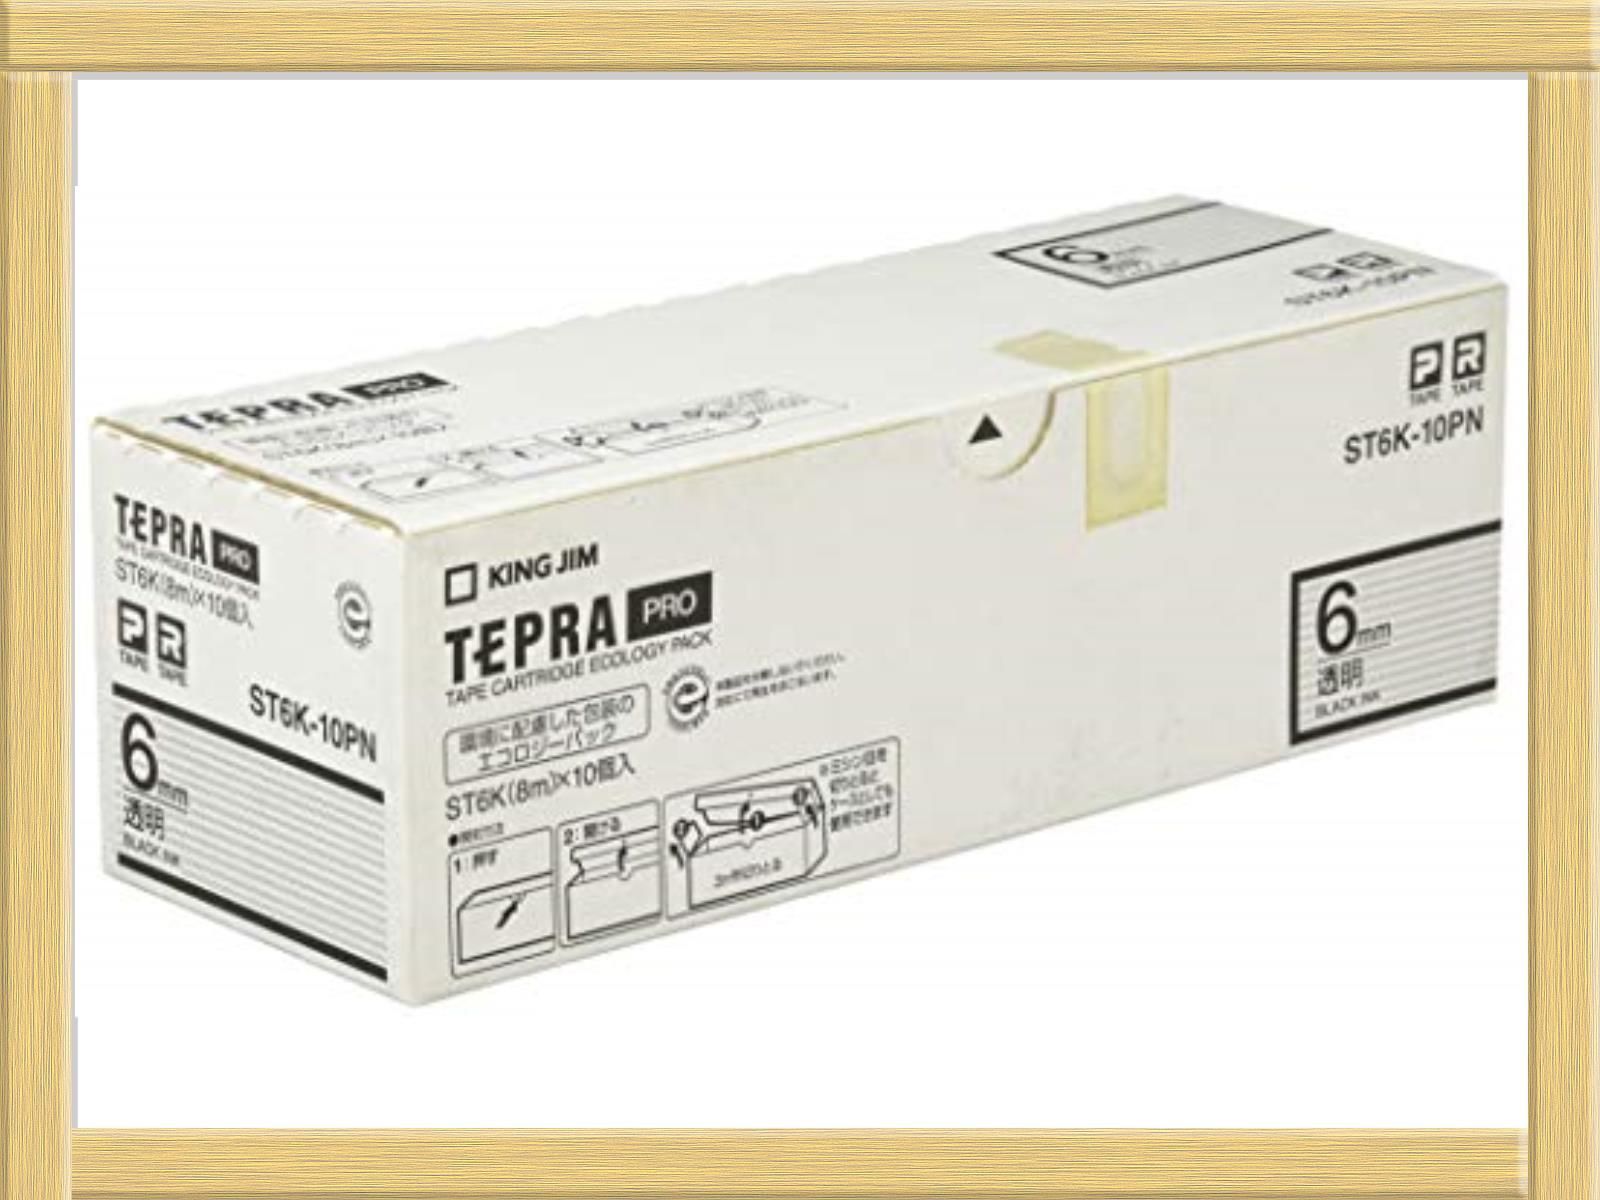 キングジム テプラPRO テープカートリッジ エコパック10個入 6mm 透明 ST6K-10PN - 1